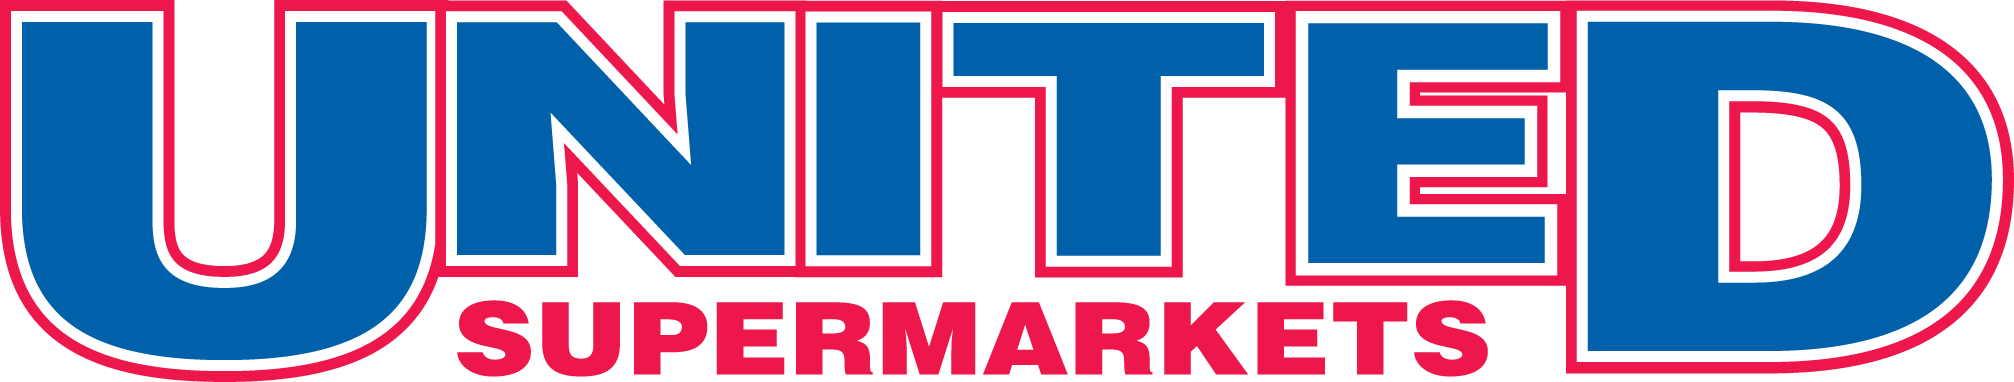 United Supermarkets logo